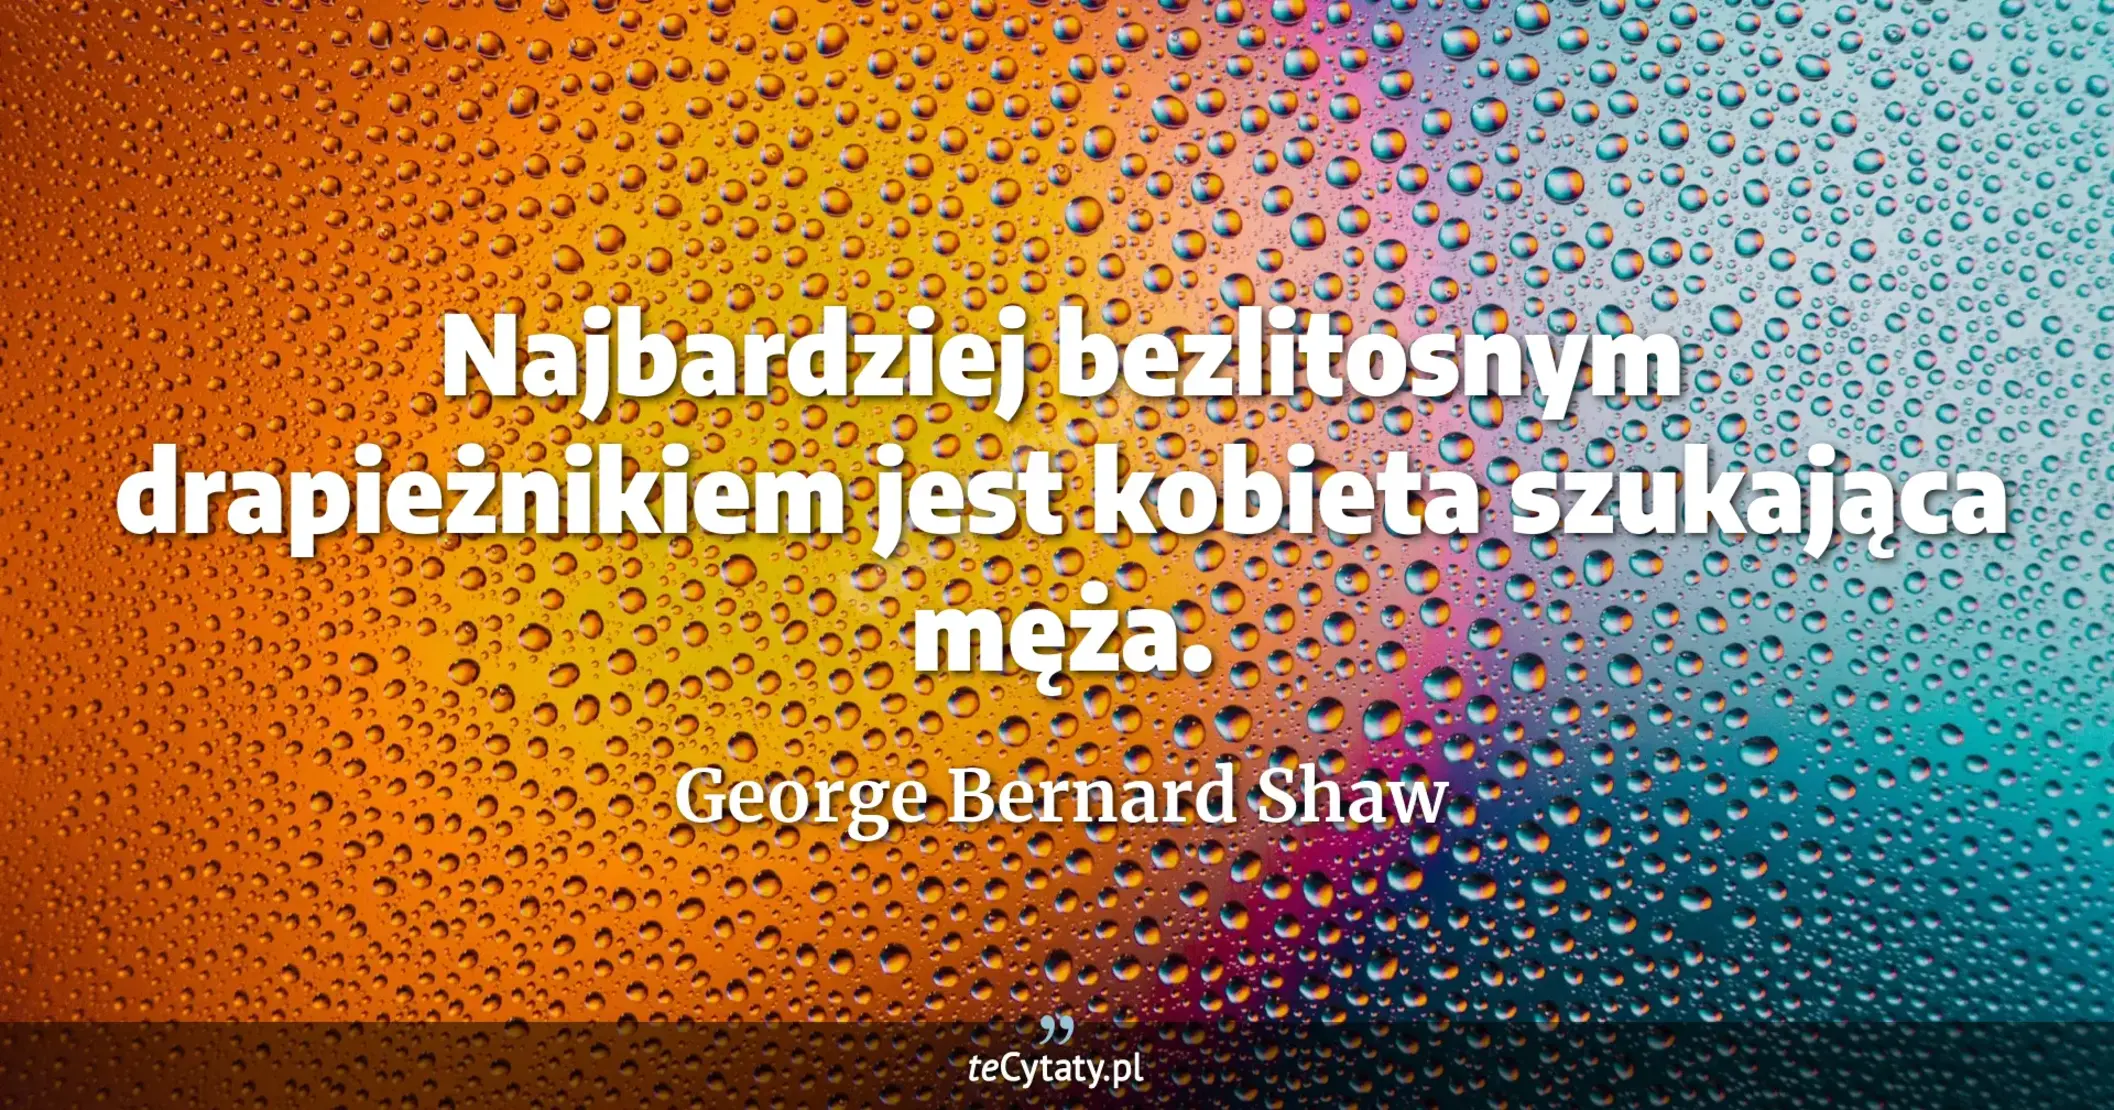 Najbardziej bezlitosnym drapieżnikiem jest kobieta szukająca męża. - George Bernard Shaw